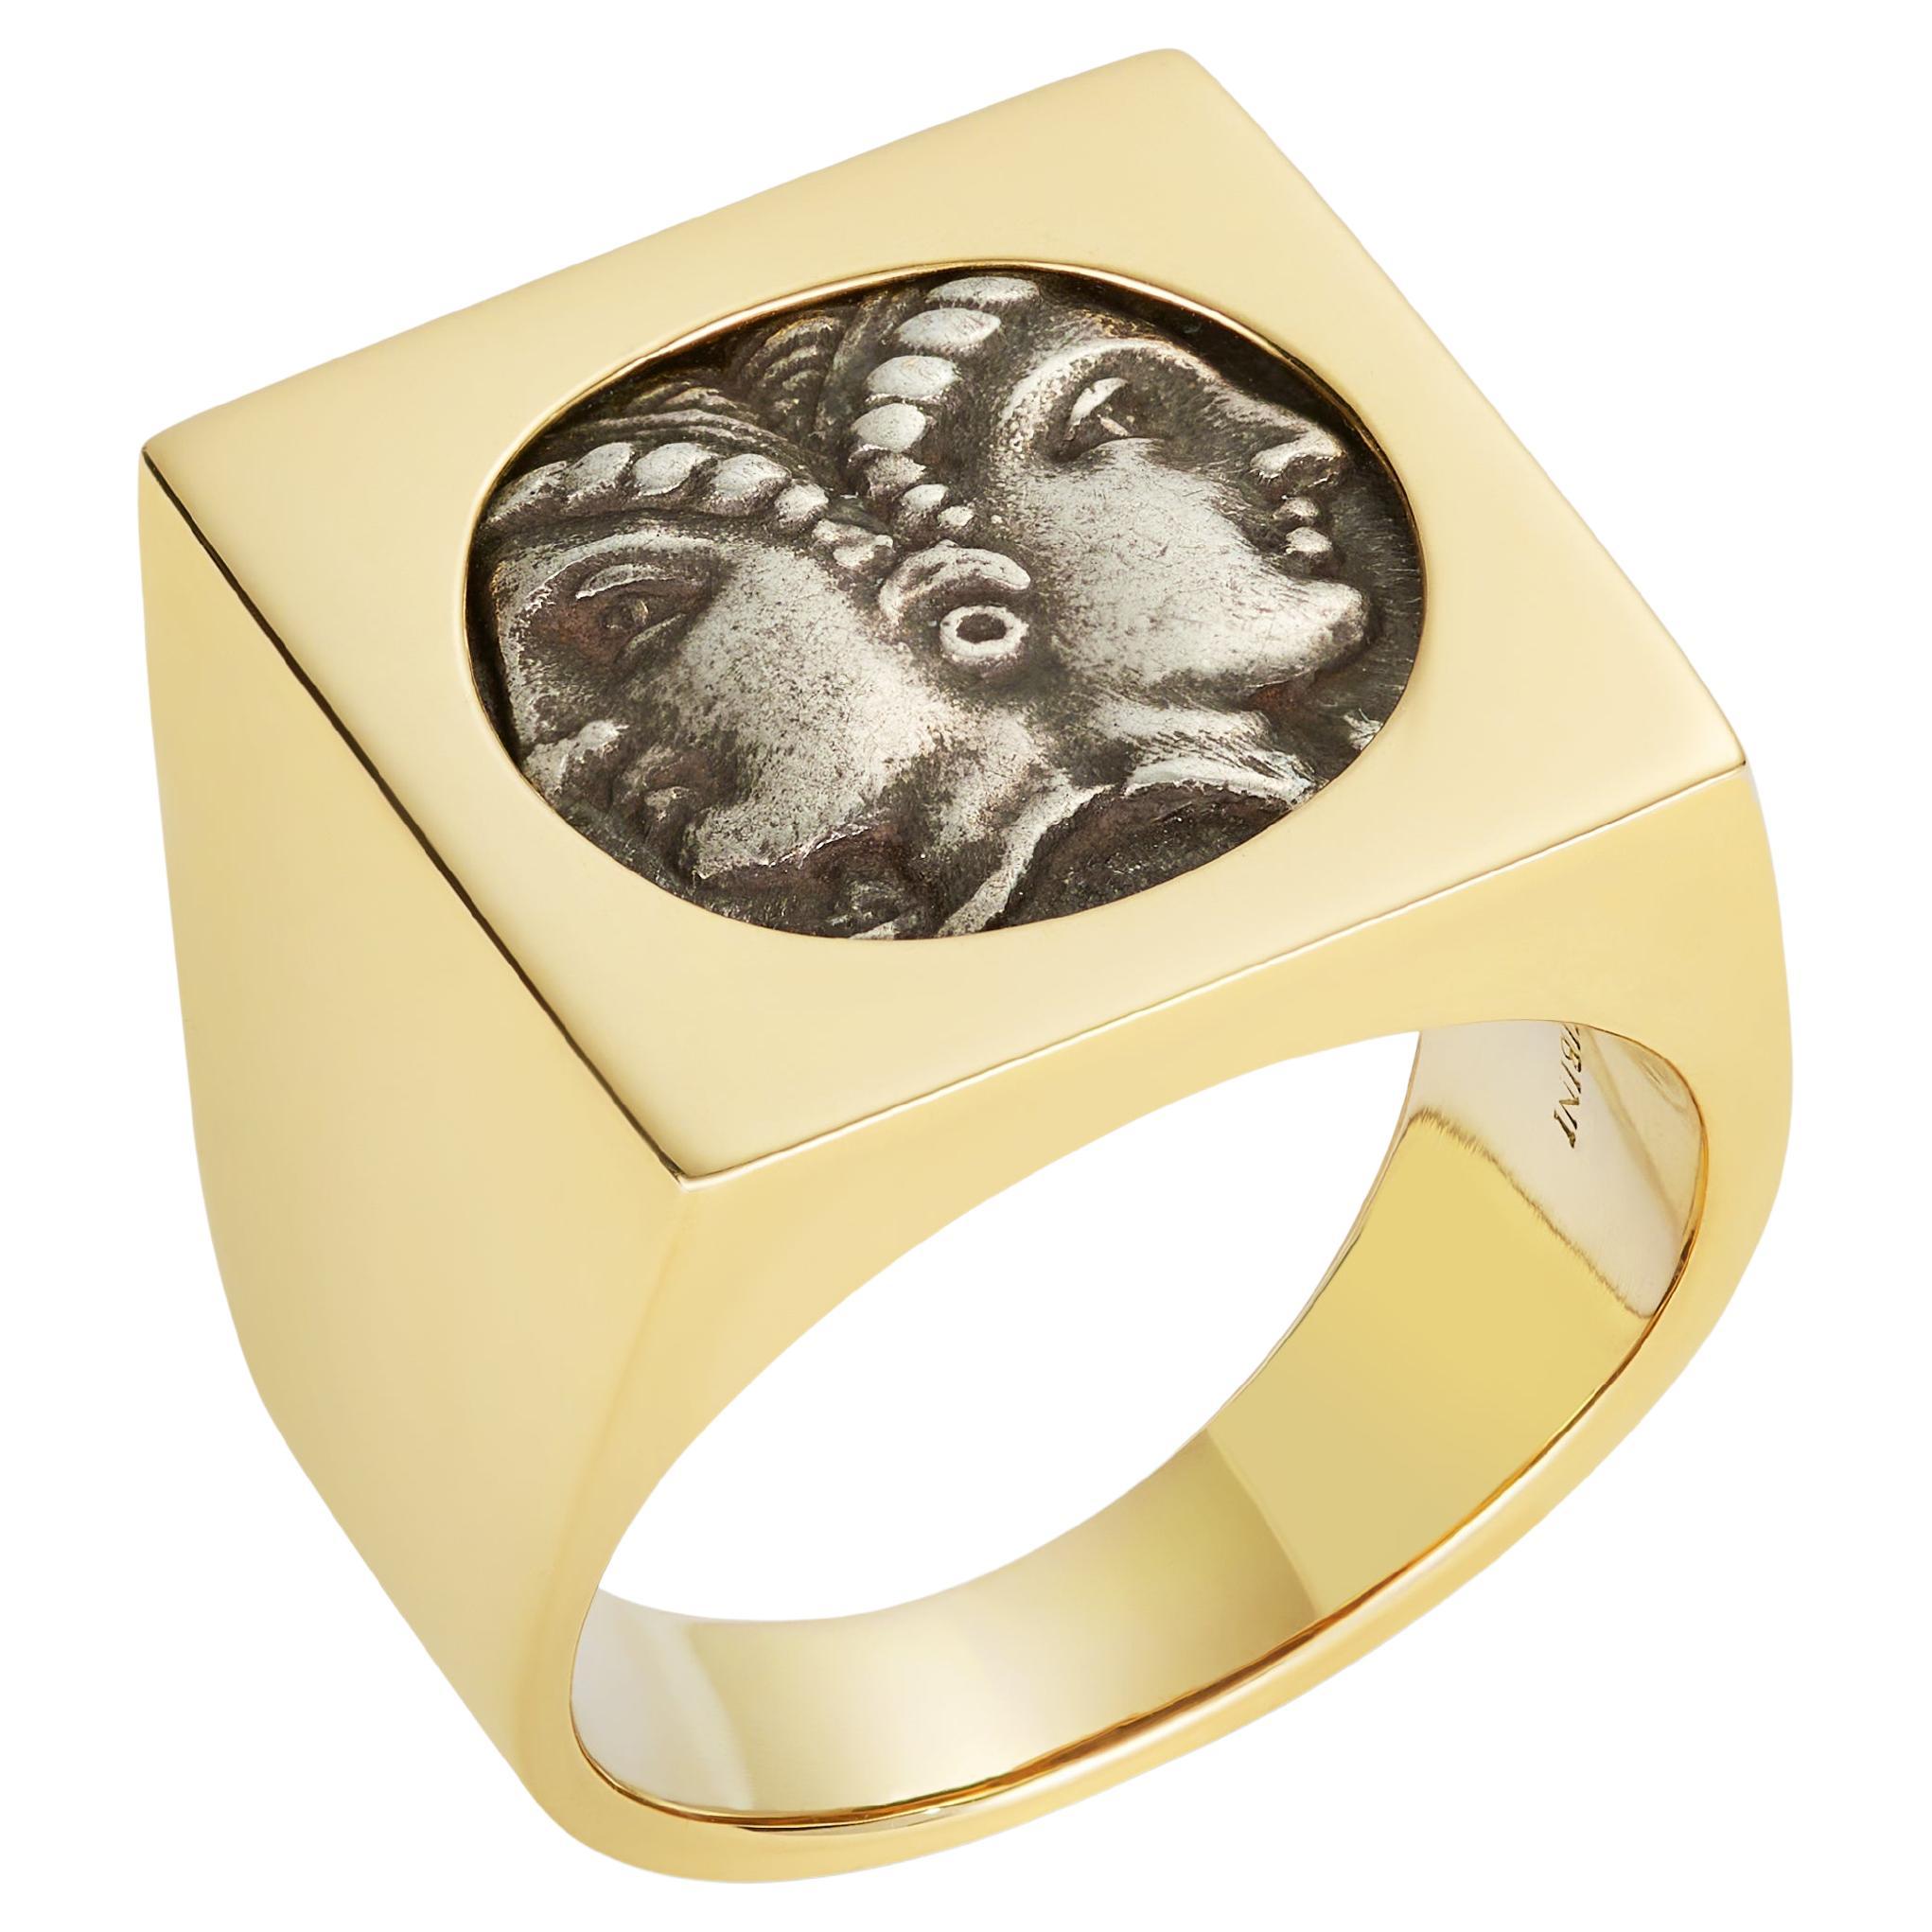 Dubini Siegelring, weibliche Janiform Antike Silbermünze 18 Karat Gelbgold